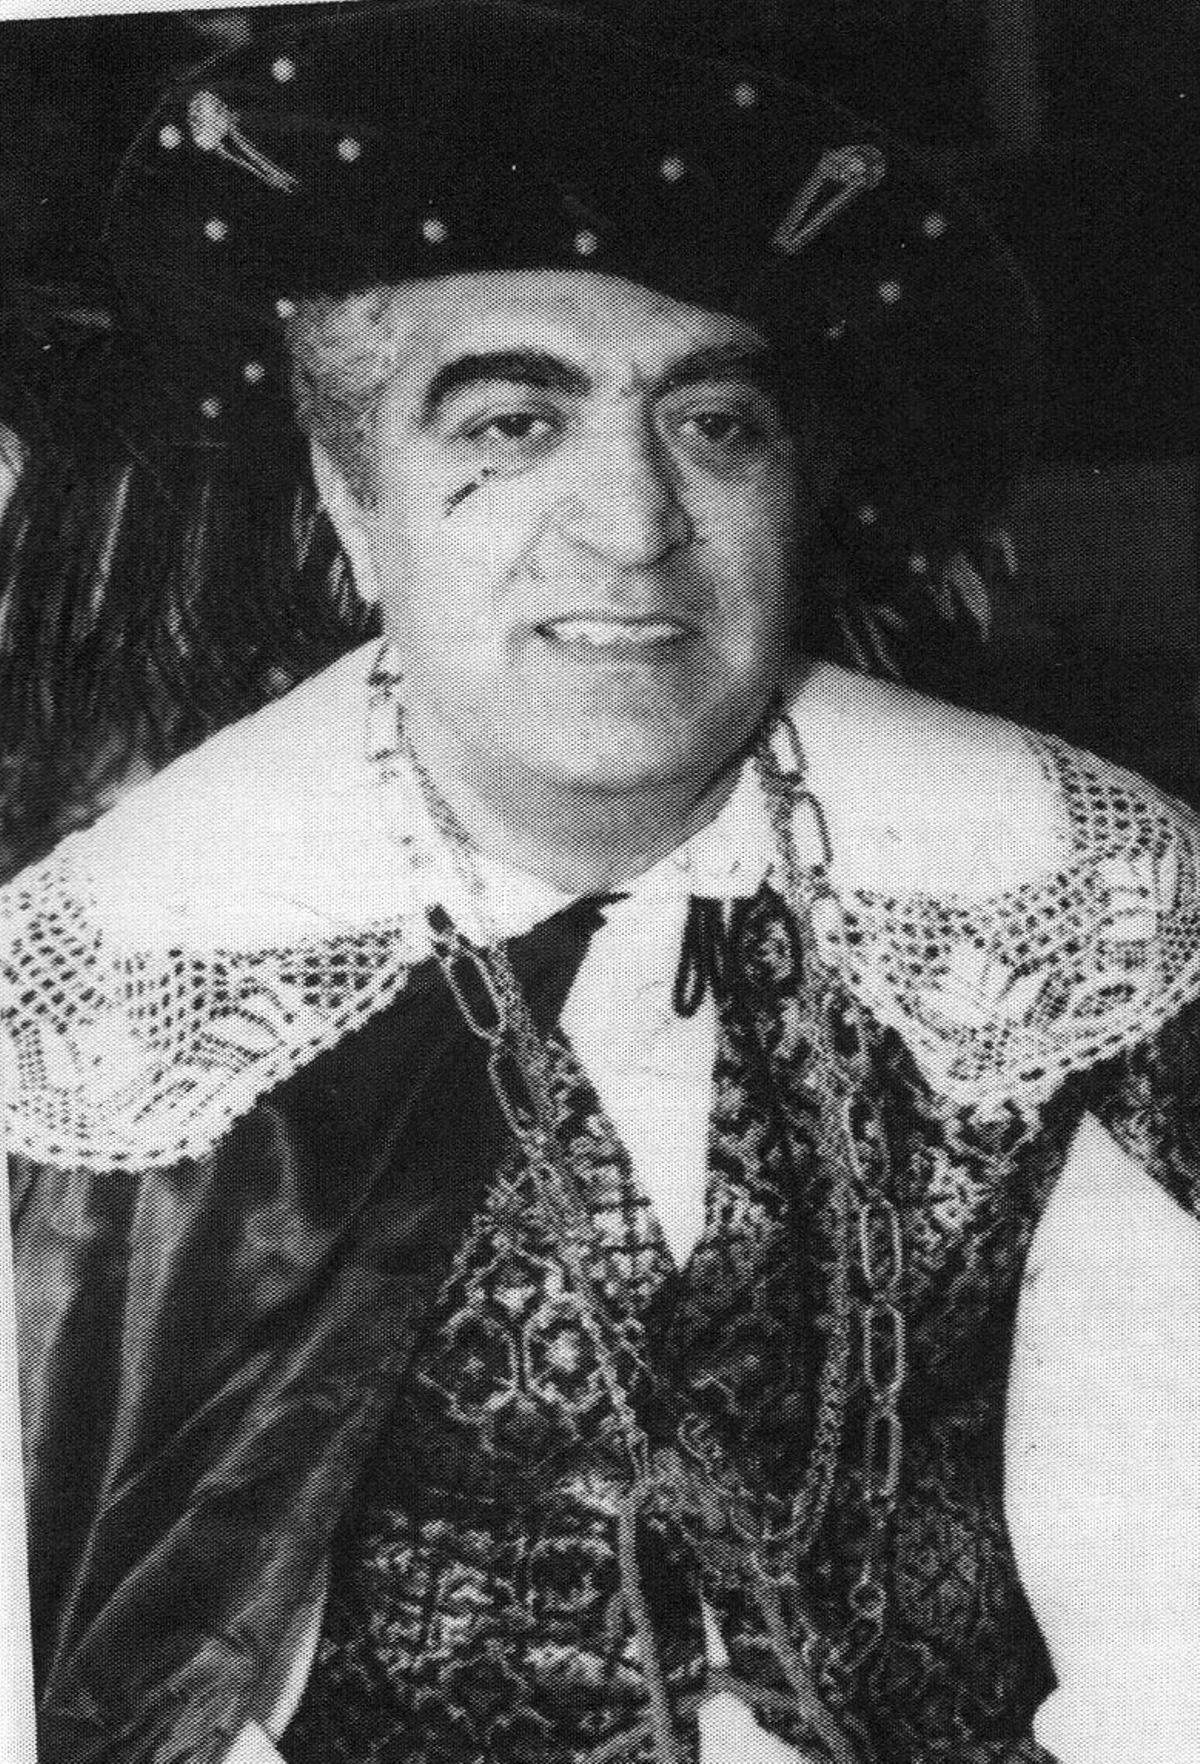 Manuel García Sánchez, presidente de la asociación de vecinos La Isleta, y promotor del Carnaval de Las Palmas de Gran Canaria.